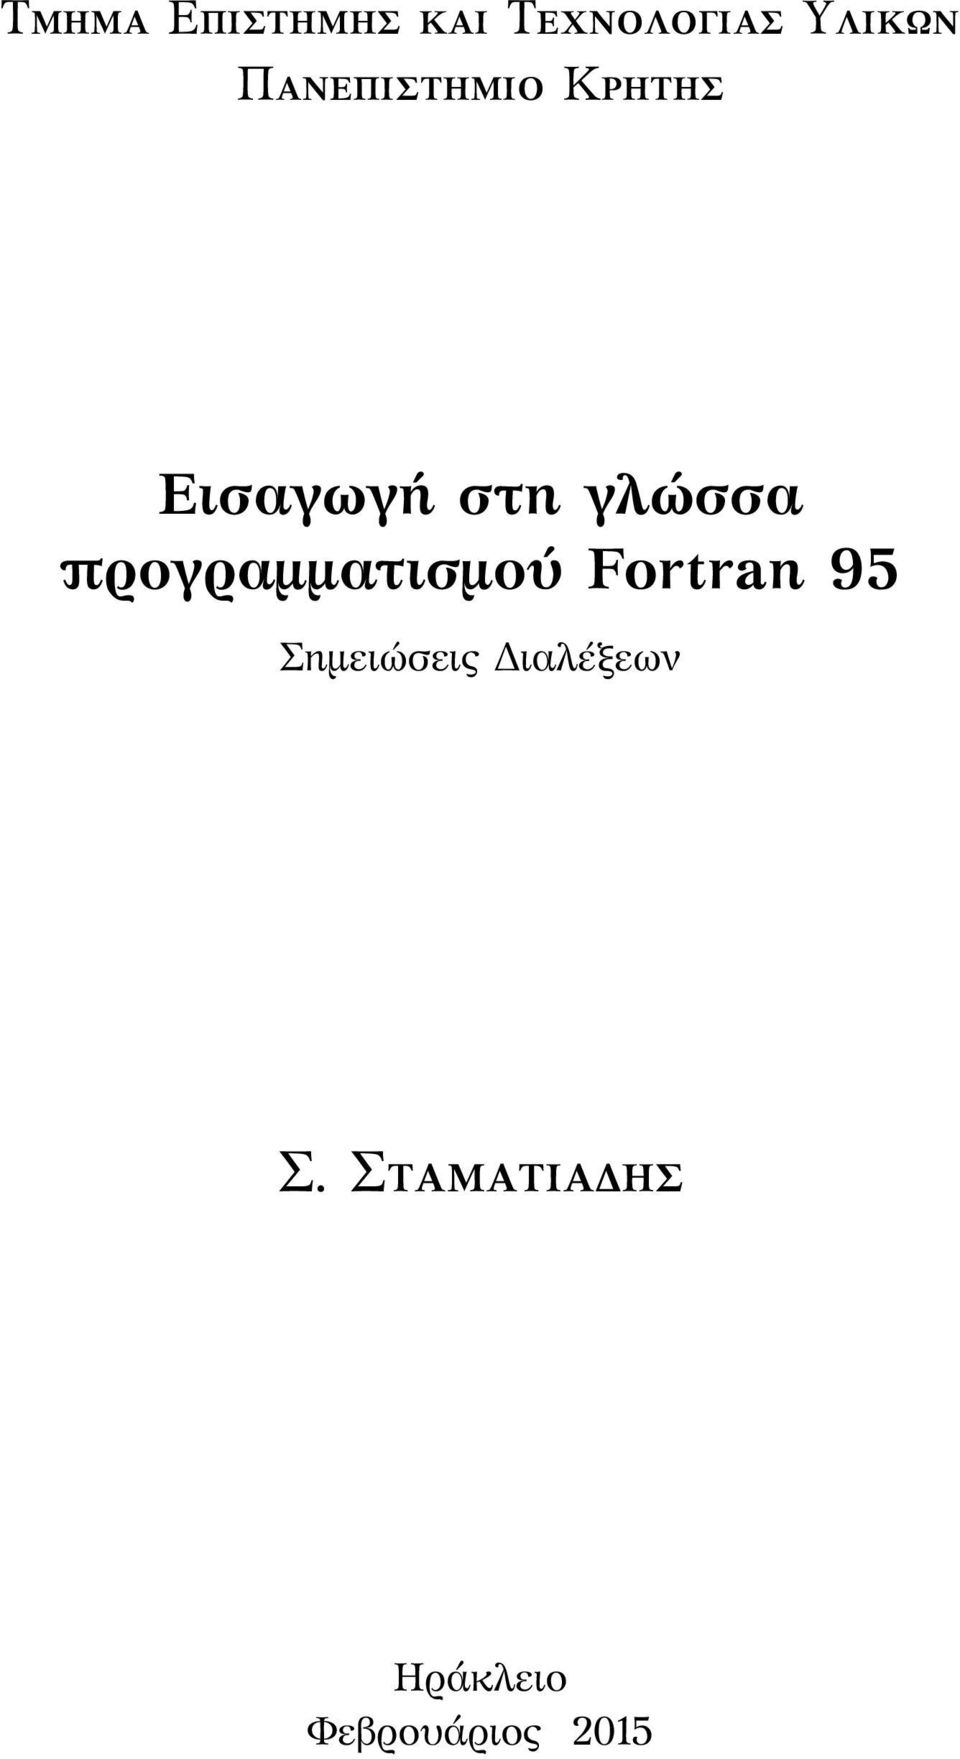 Fortran 95 Σημειώσεις